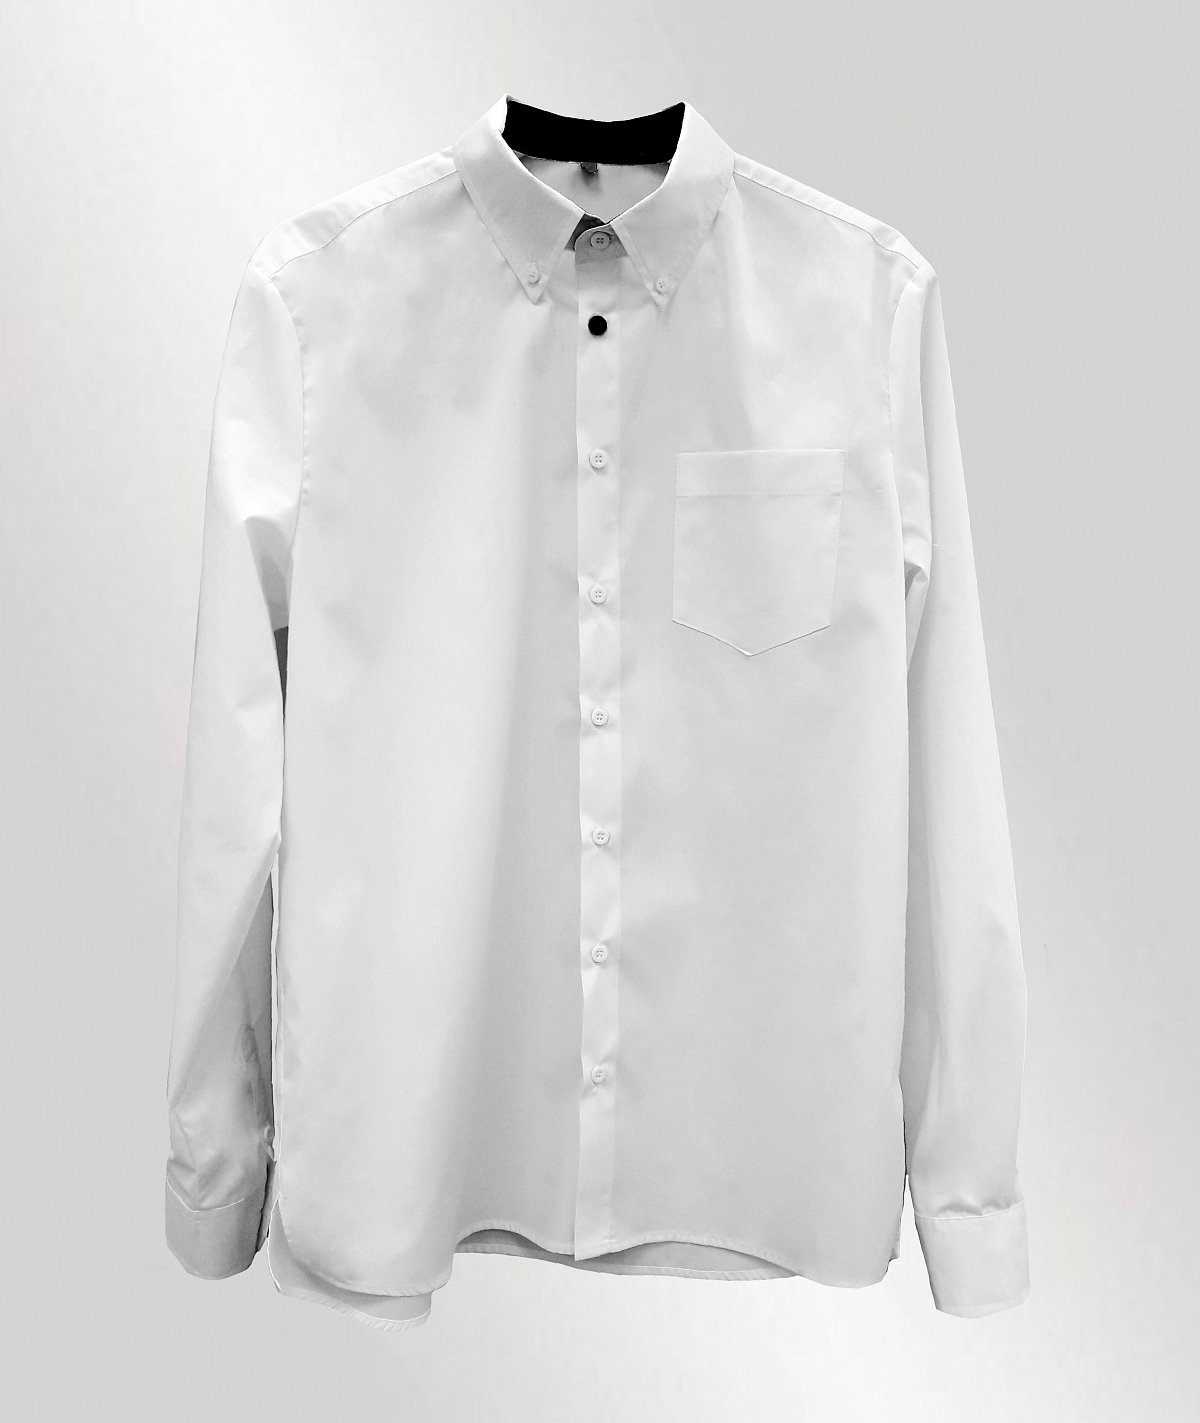 Пошив рубашек - пример модели мужская рубашка